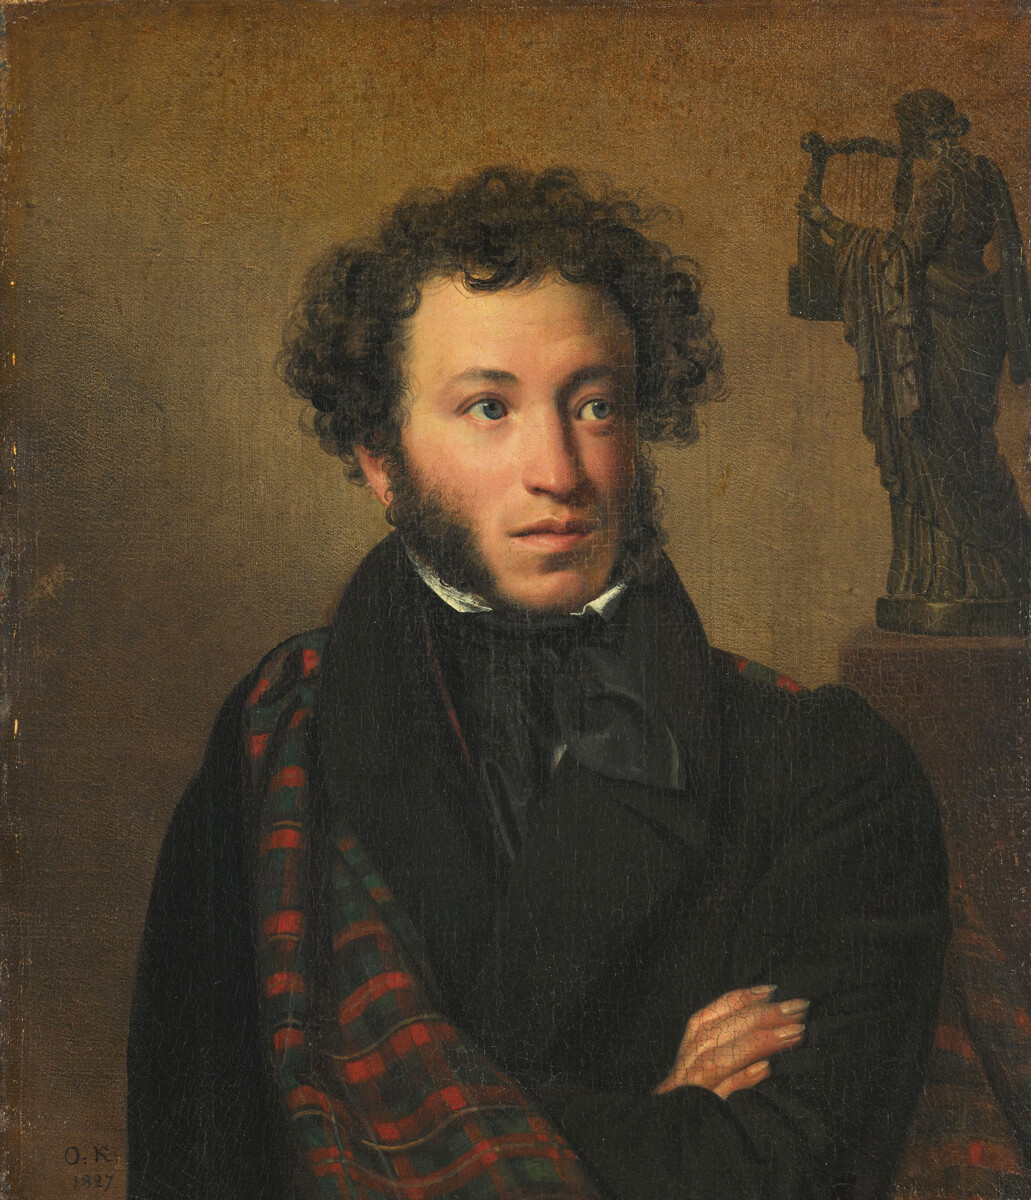 Porträt von Alexander Puschkin, 1827, Orest Kiprenski.